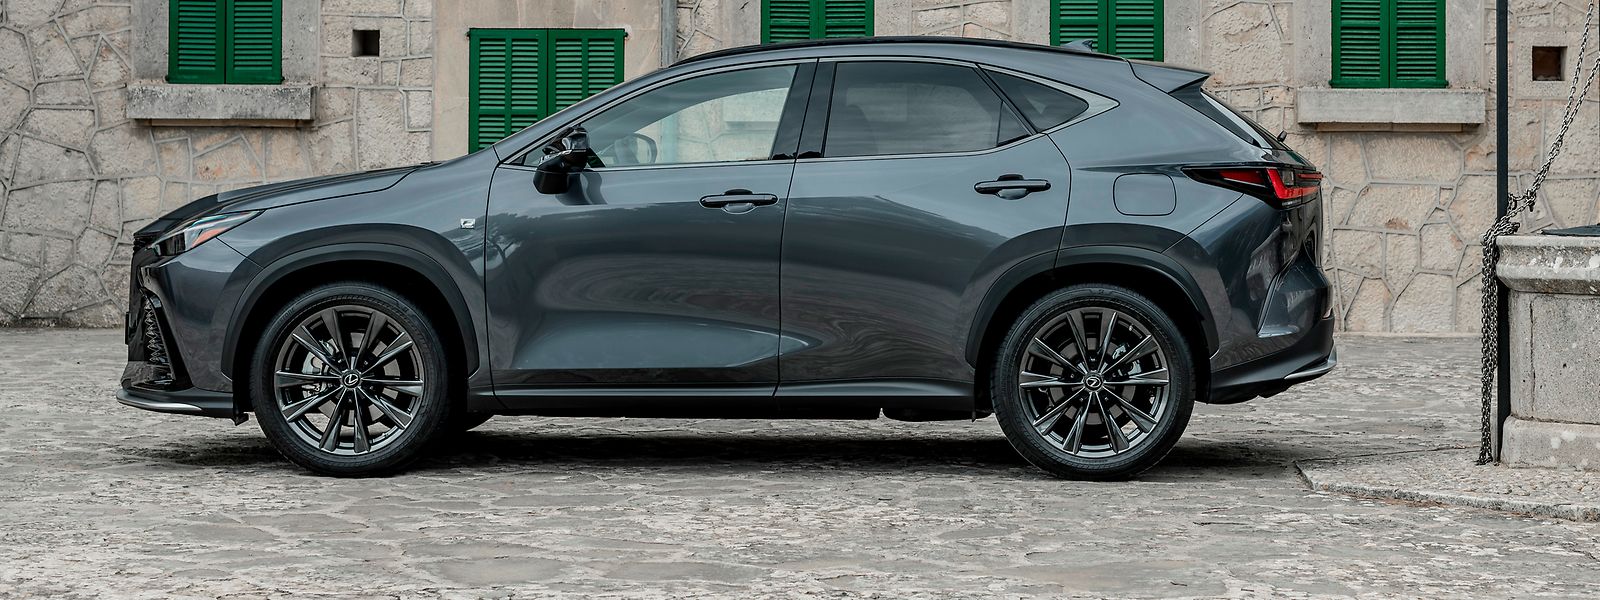 Ebenso wie mit seinem anspruchsvollen, kühnen Außendesign will der neue Lexus NX auch mit seinen verbesserten rein elektrischen Fahrfähigkeiten punkten.